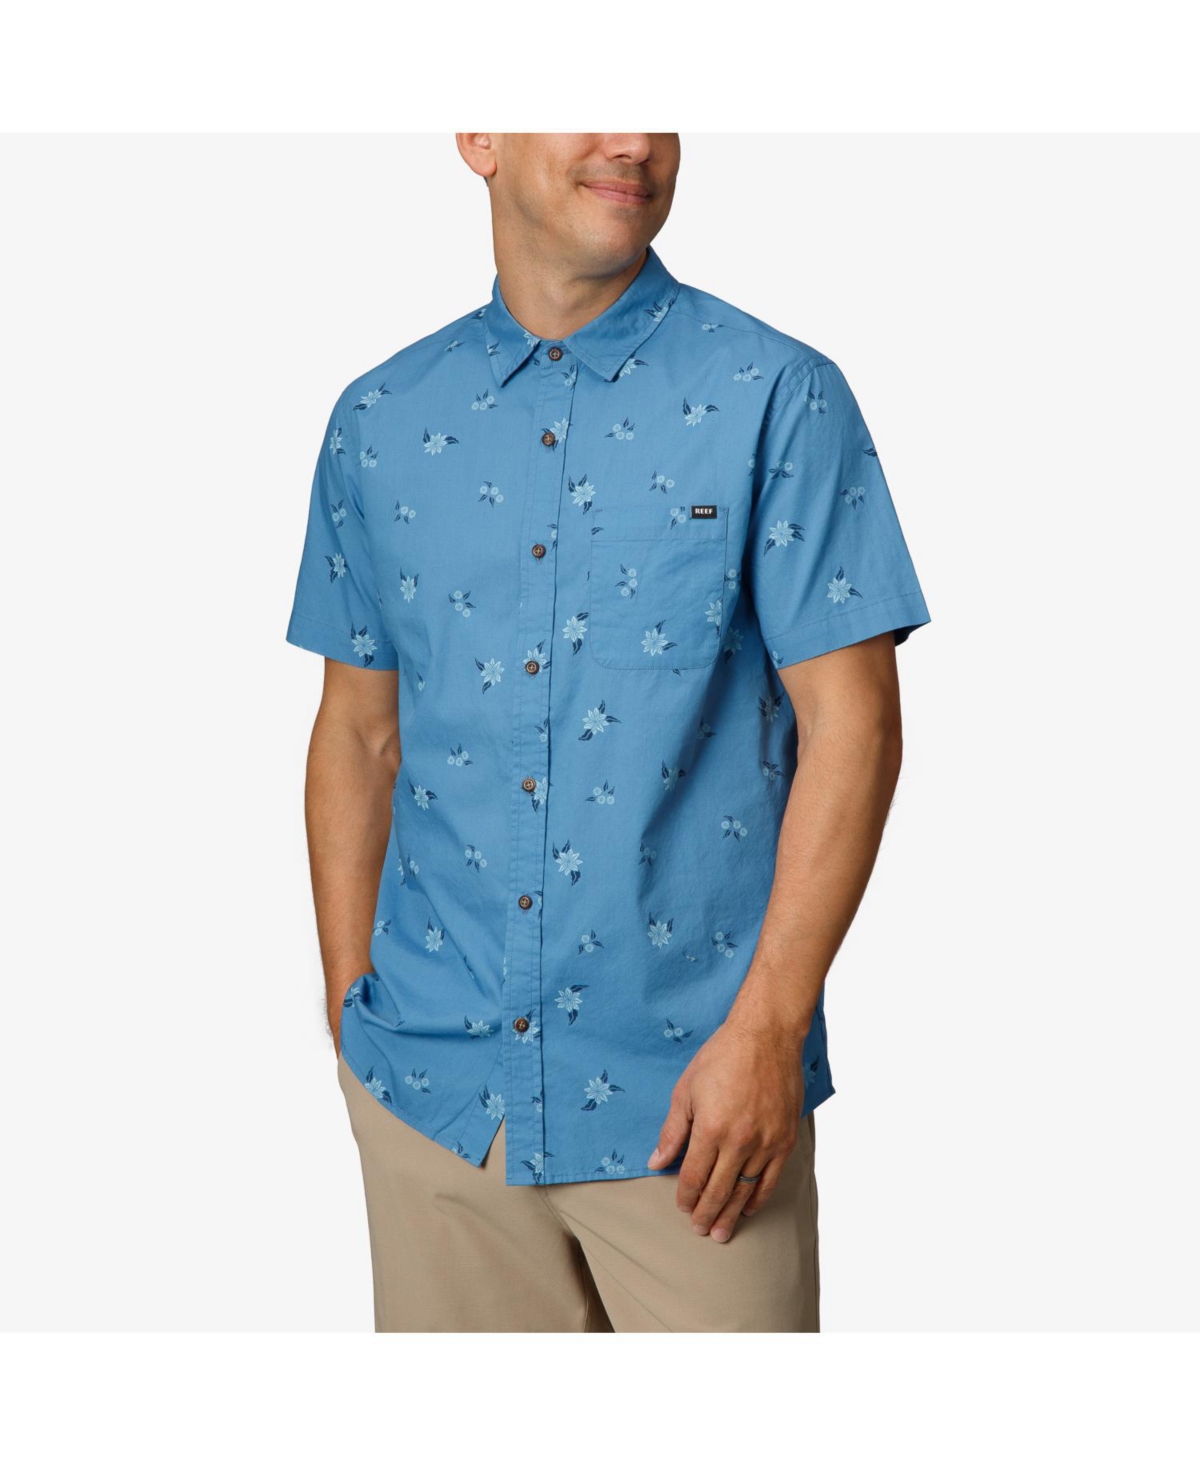 Men's Montana Short Sleeve Woven Shirt - Parisian Blue